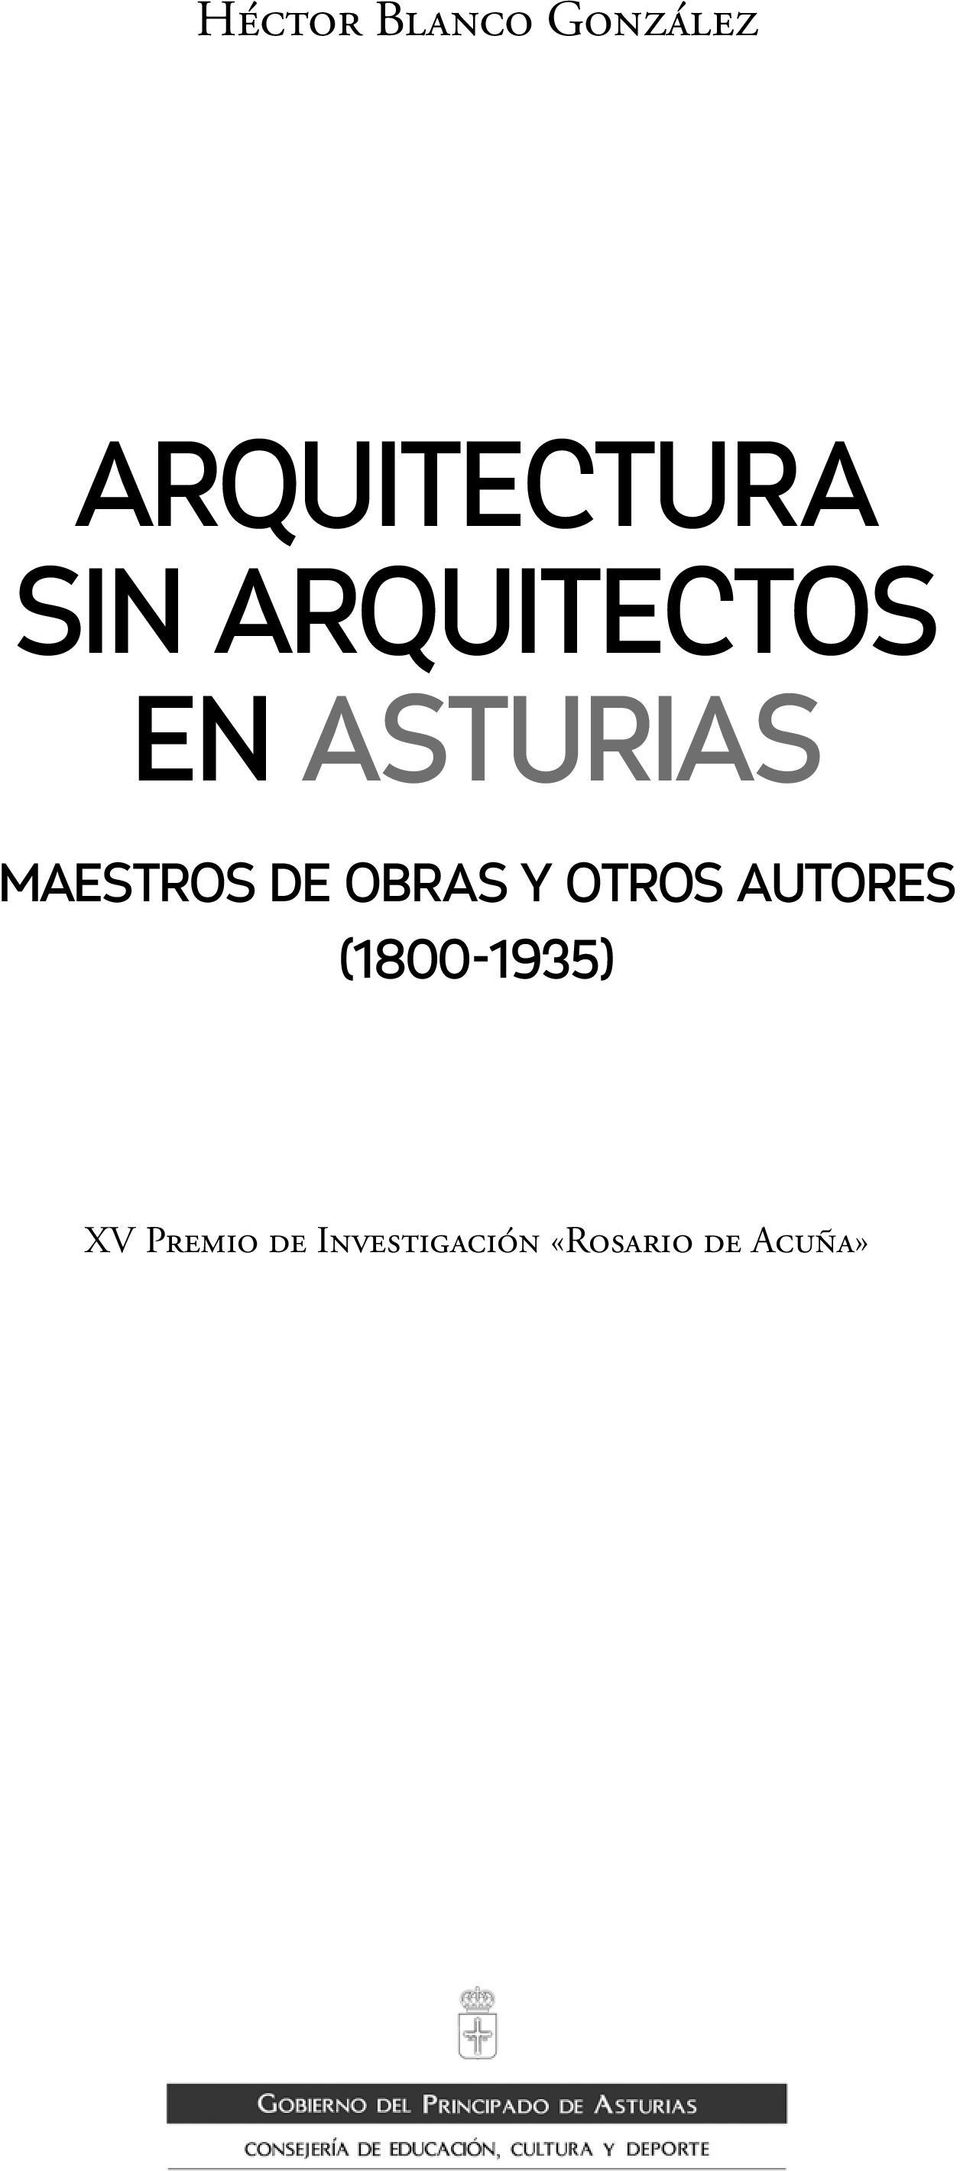 de obras y otros autores (1800-1935)